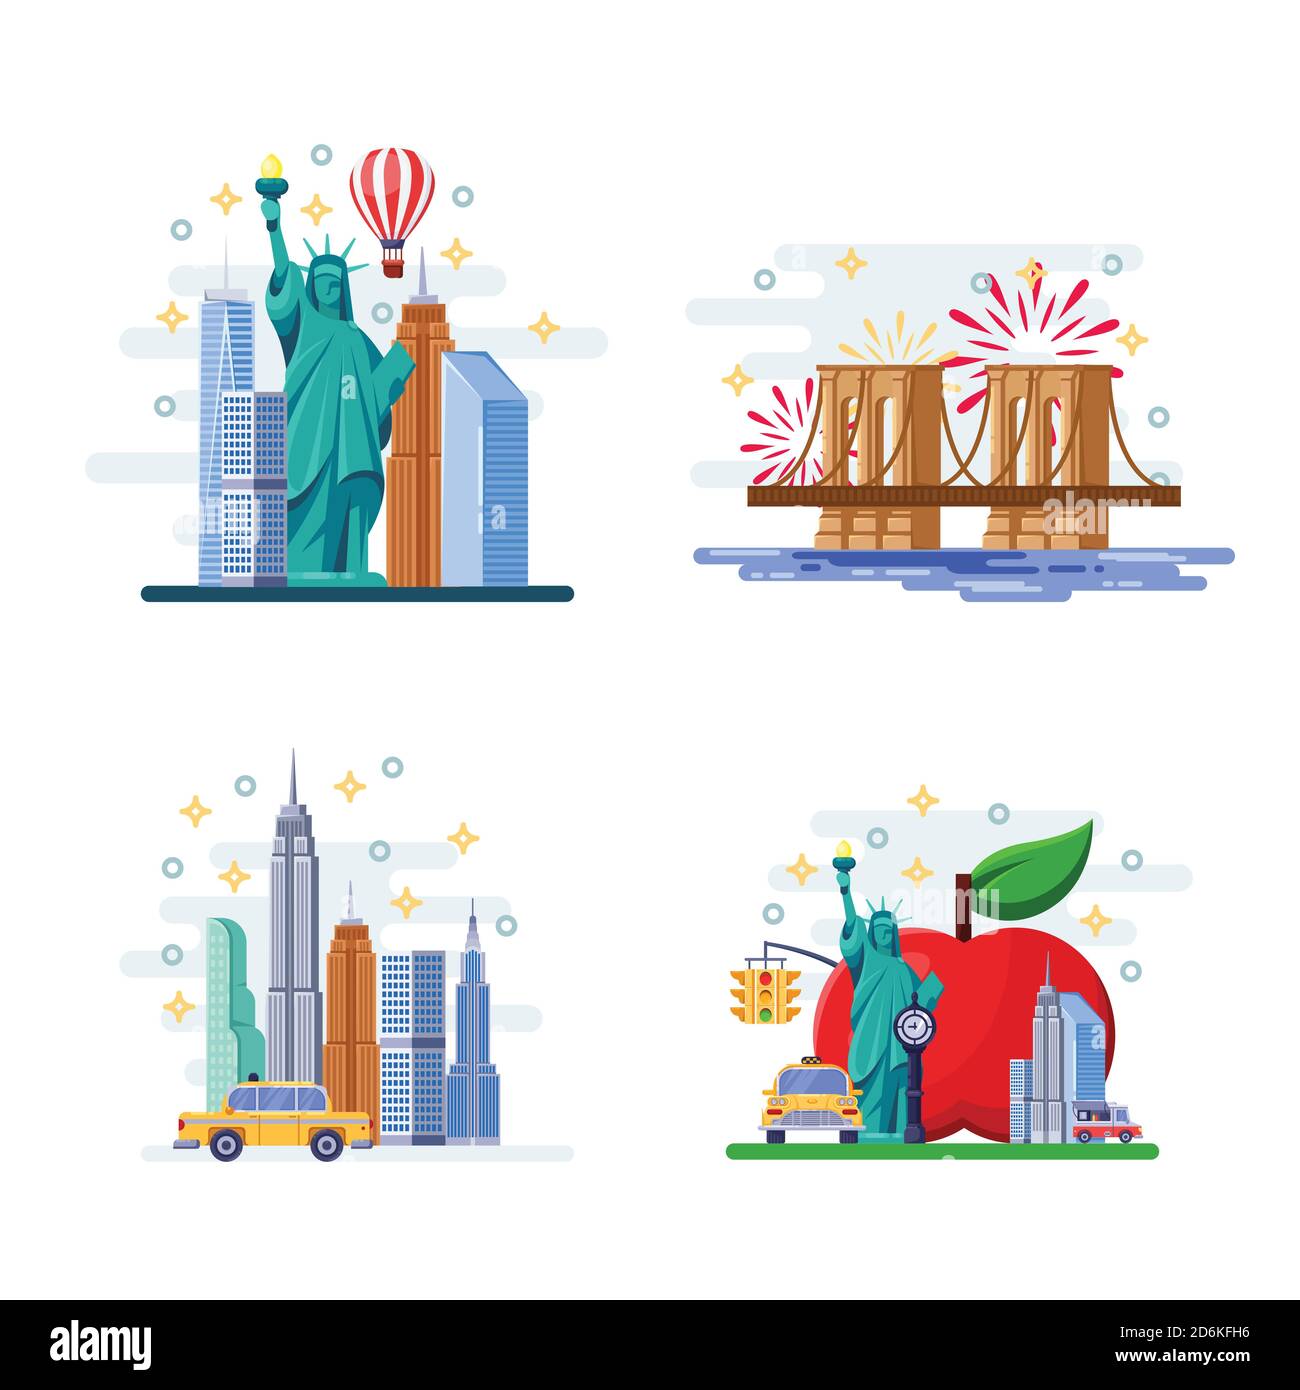 Rendez-vous à l'illustration vectorielle plate de New York. Symboles de la ville, monuments et lieux célèbres. Icônes et éléments de design des Etats-Unis. Illustration de Vecteur